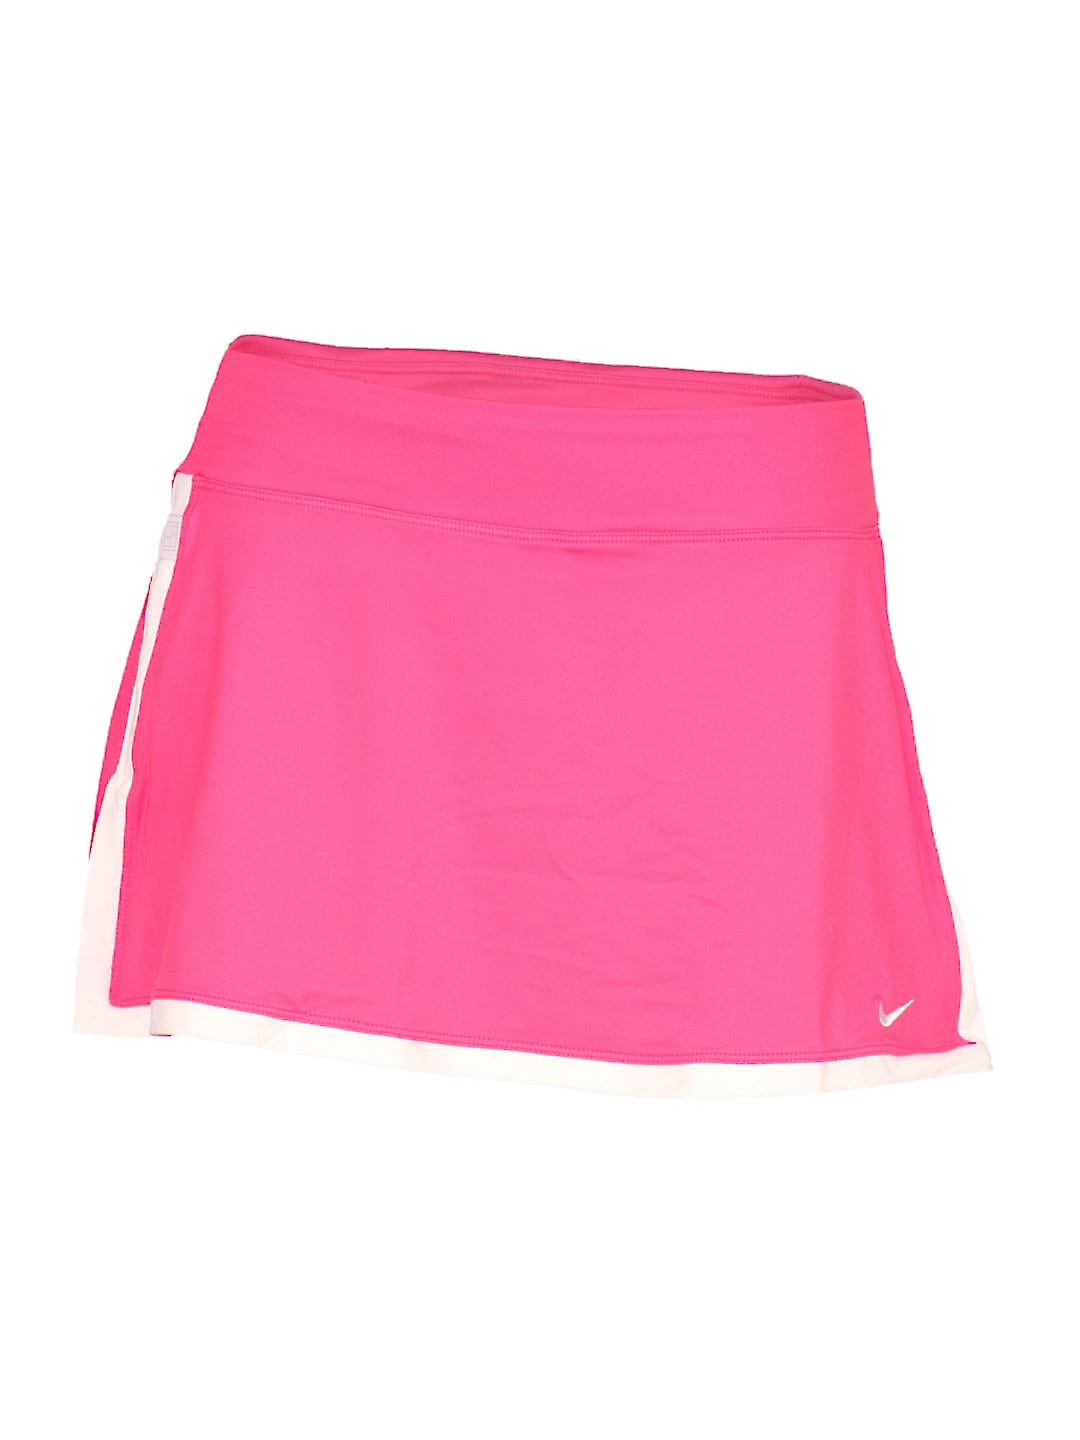 Nike Women's Border Pink Skirt